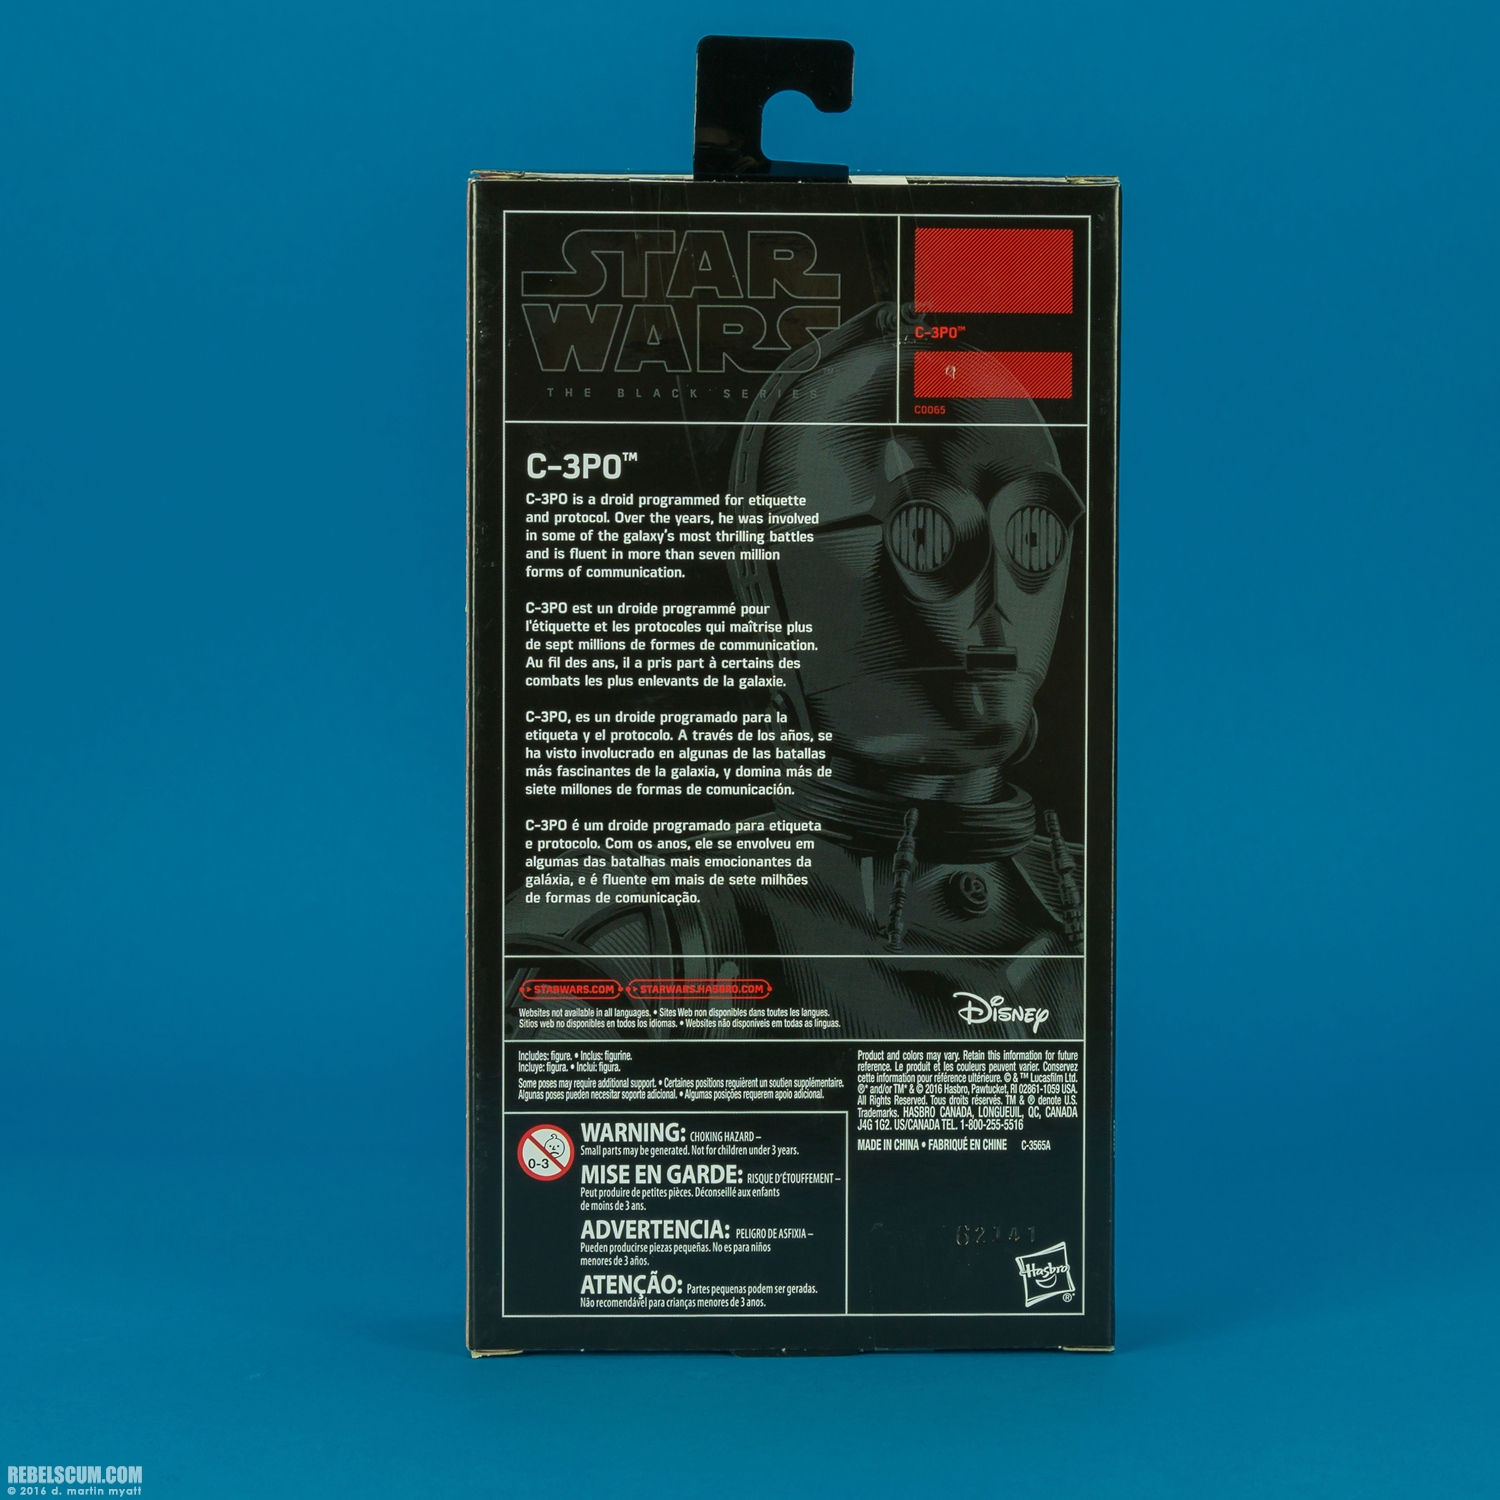 C-3PO-C0065-The-Black-Series-Walgreens-EB-Games-016.jpg